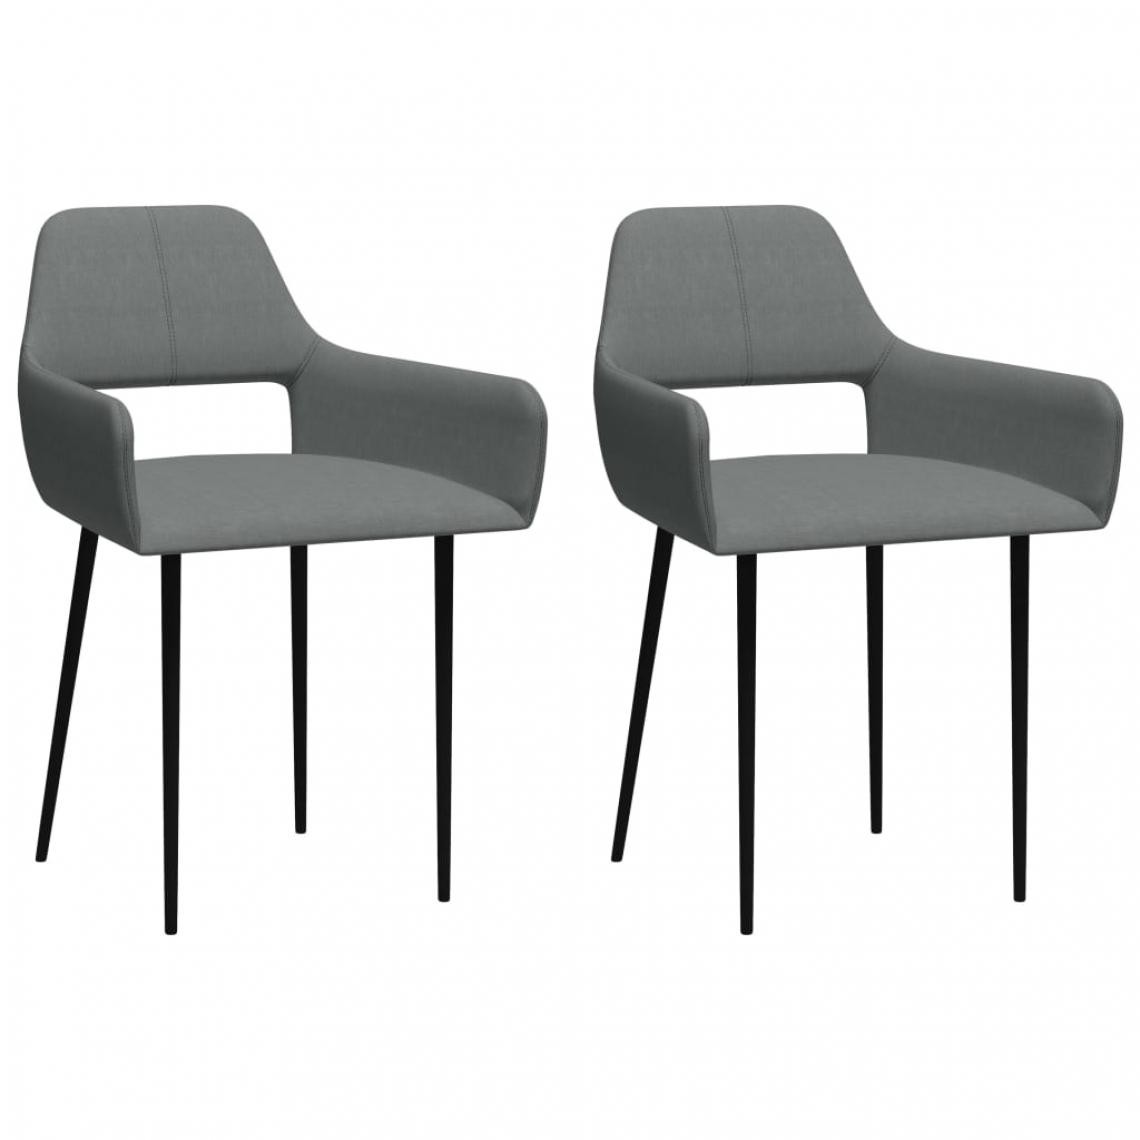 Decoshop26 - Lot de 2 chaises de salle à manger cuisine design moderne en tissu gris clair CDS020496 - Chaises